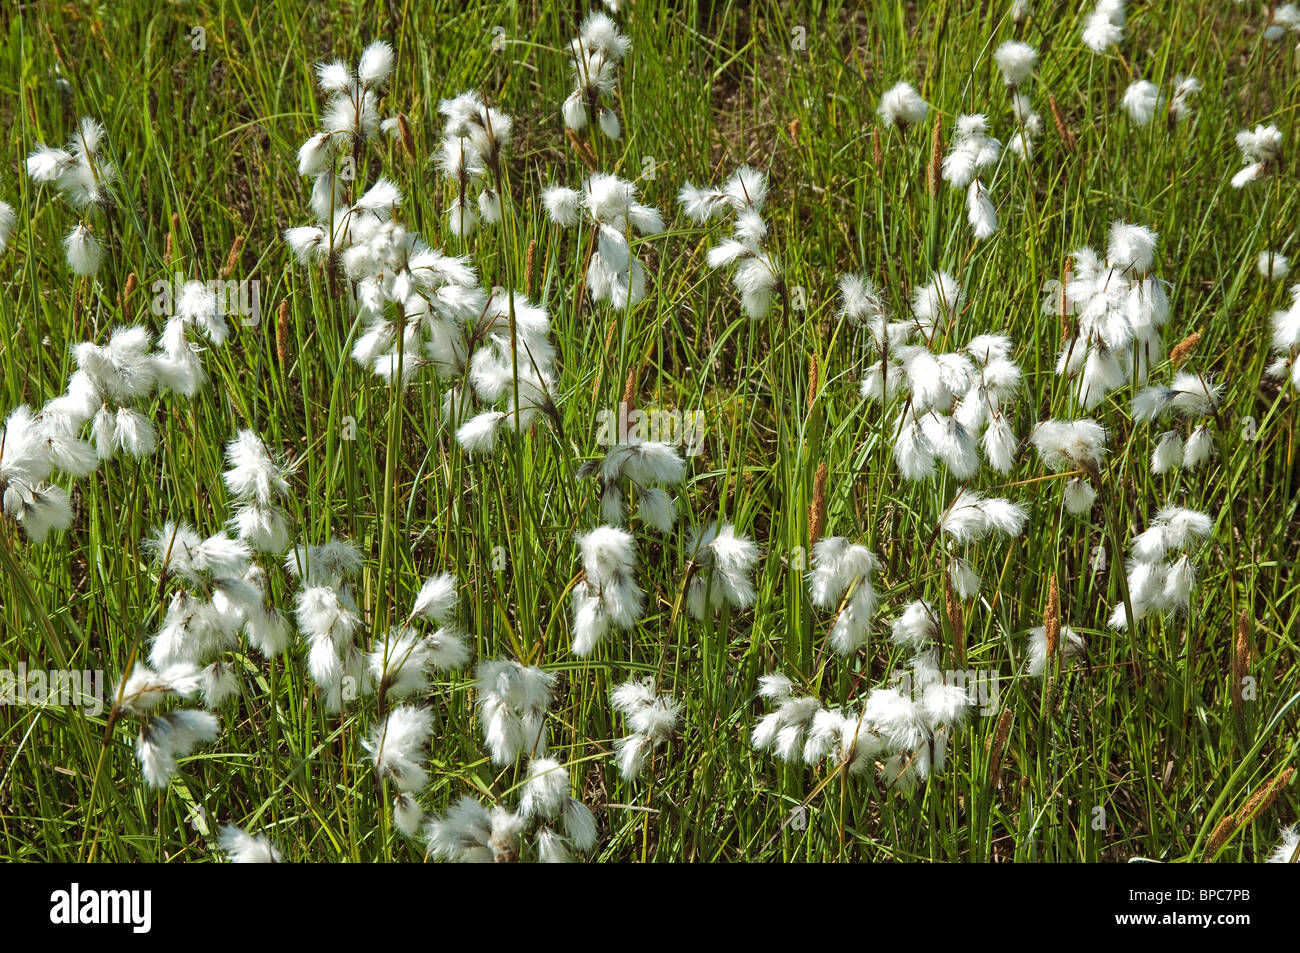 White Cottongrass (Eriophorum latifolium) with seed heads. Stock Photo